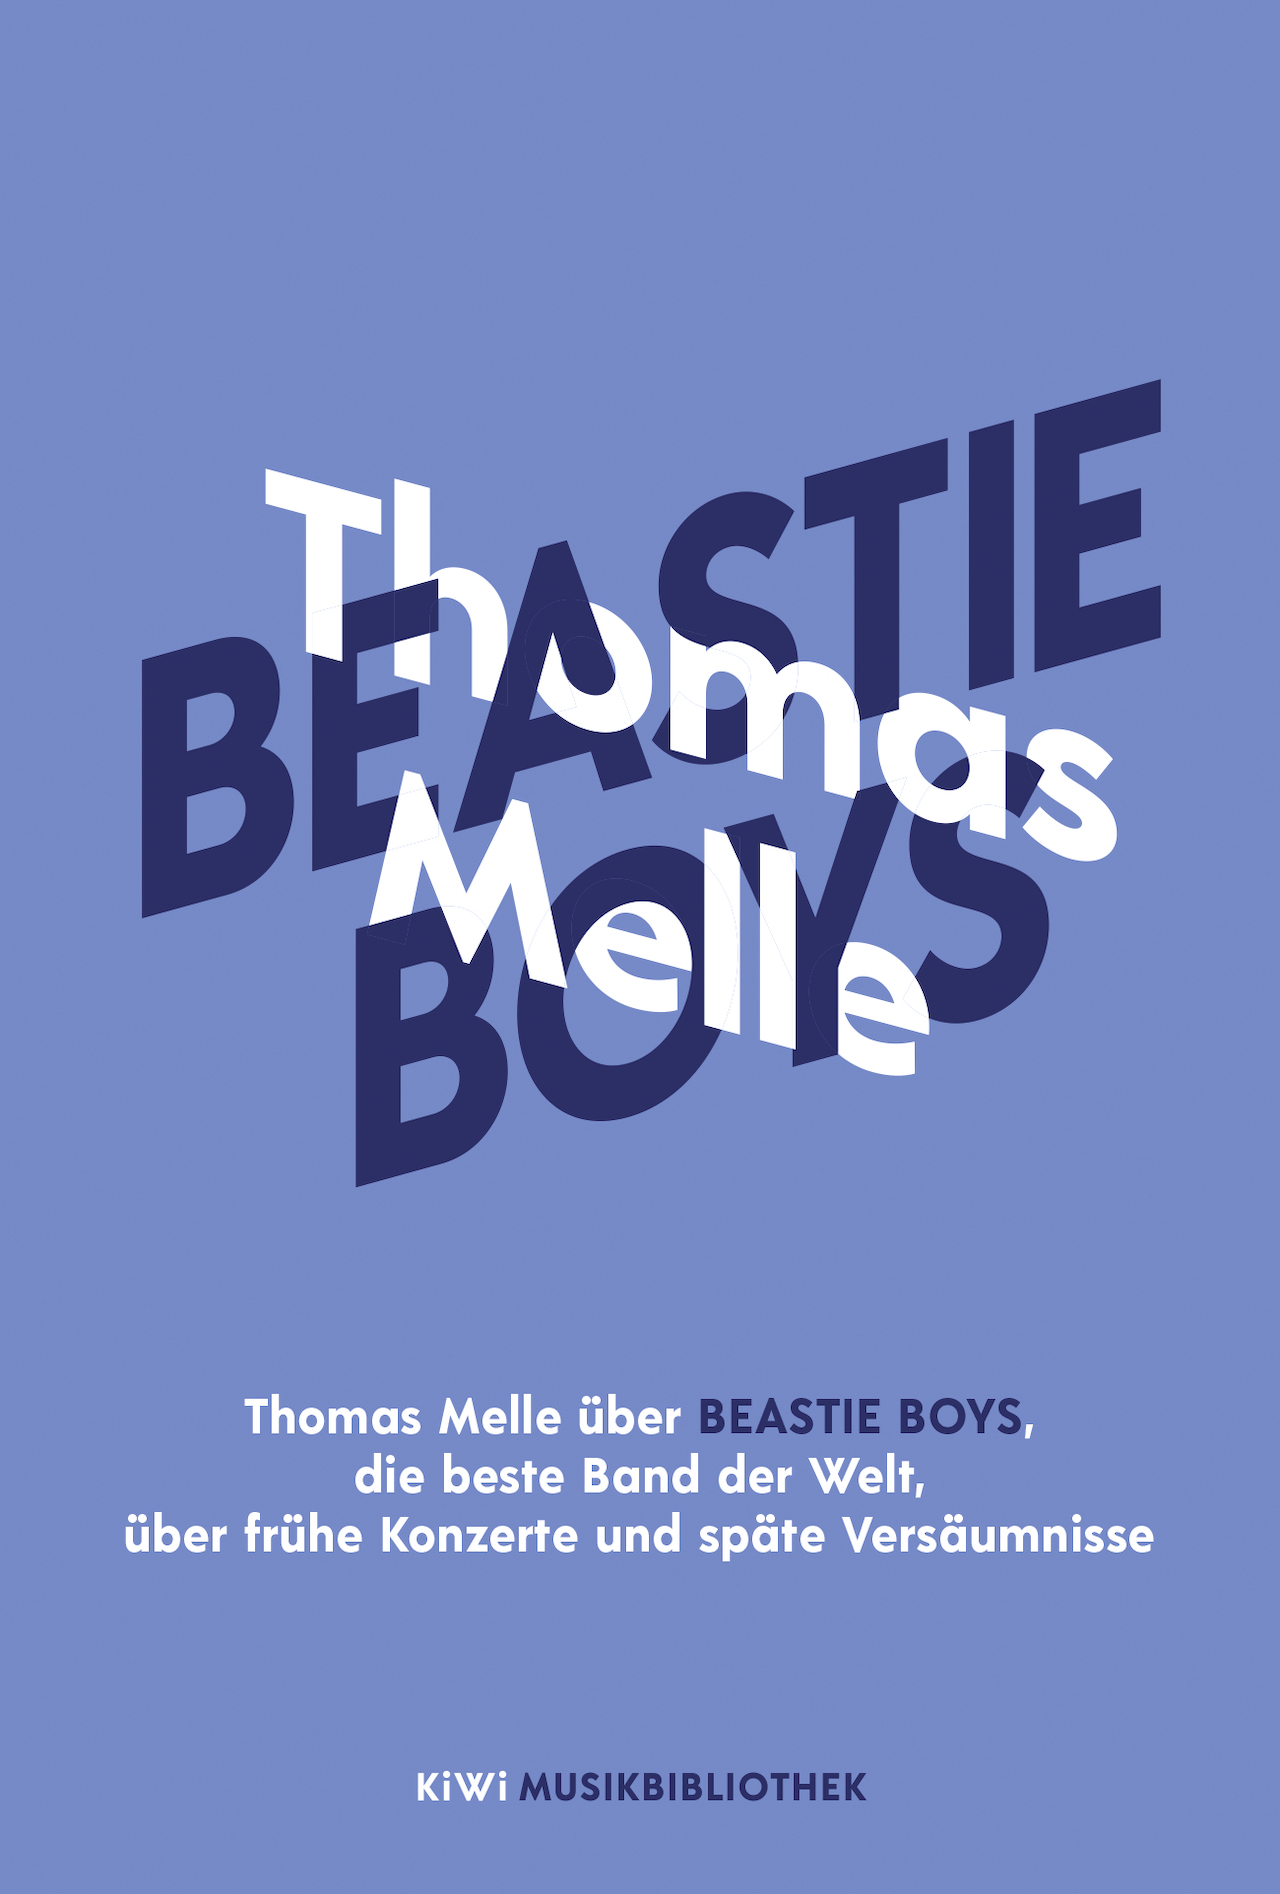 Thomas Melle über die Beastie Boys Buch Cover blaue Schrift